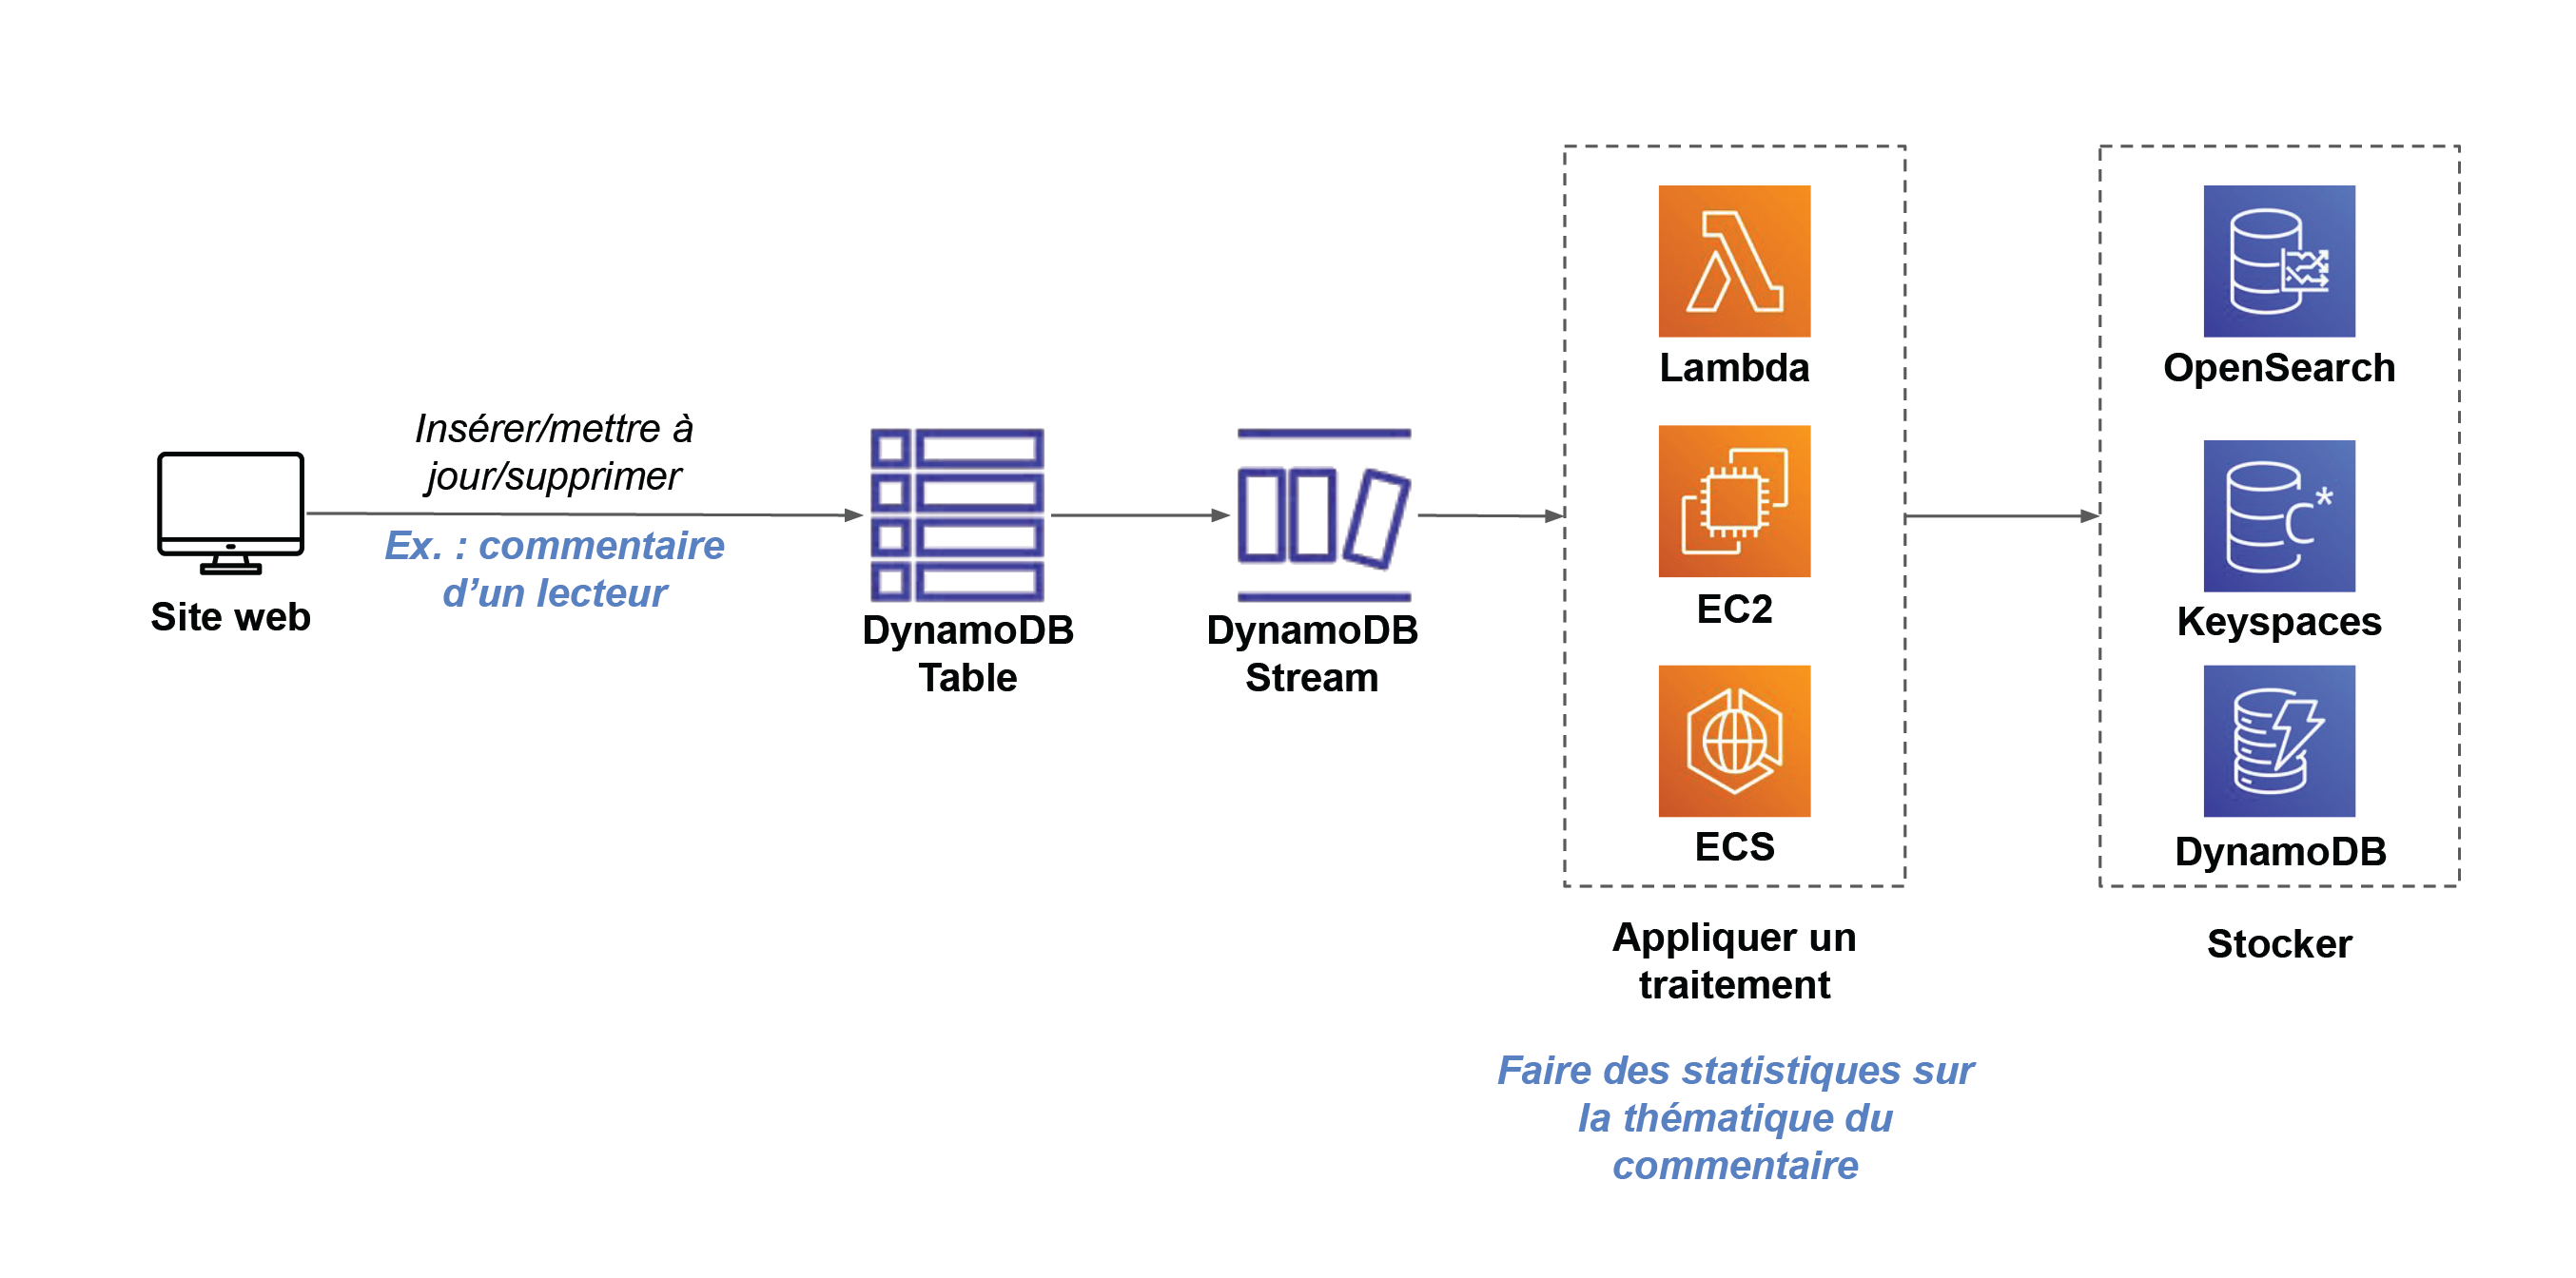 Un chemin mène du site web vers DynamoDB Table, puis DynamoDB Stream, puis le bloc “Appliquer un traitement” qui comporte Lambda, EC2, ECS, puis le bloc “stocker” qui comporte OpenSearch, Keyspaces et DynamoDB.